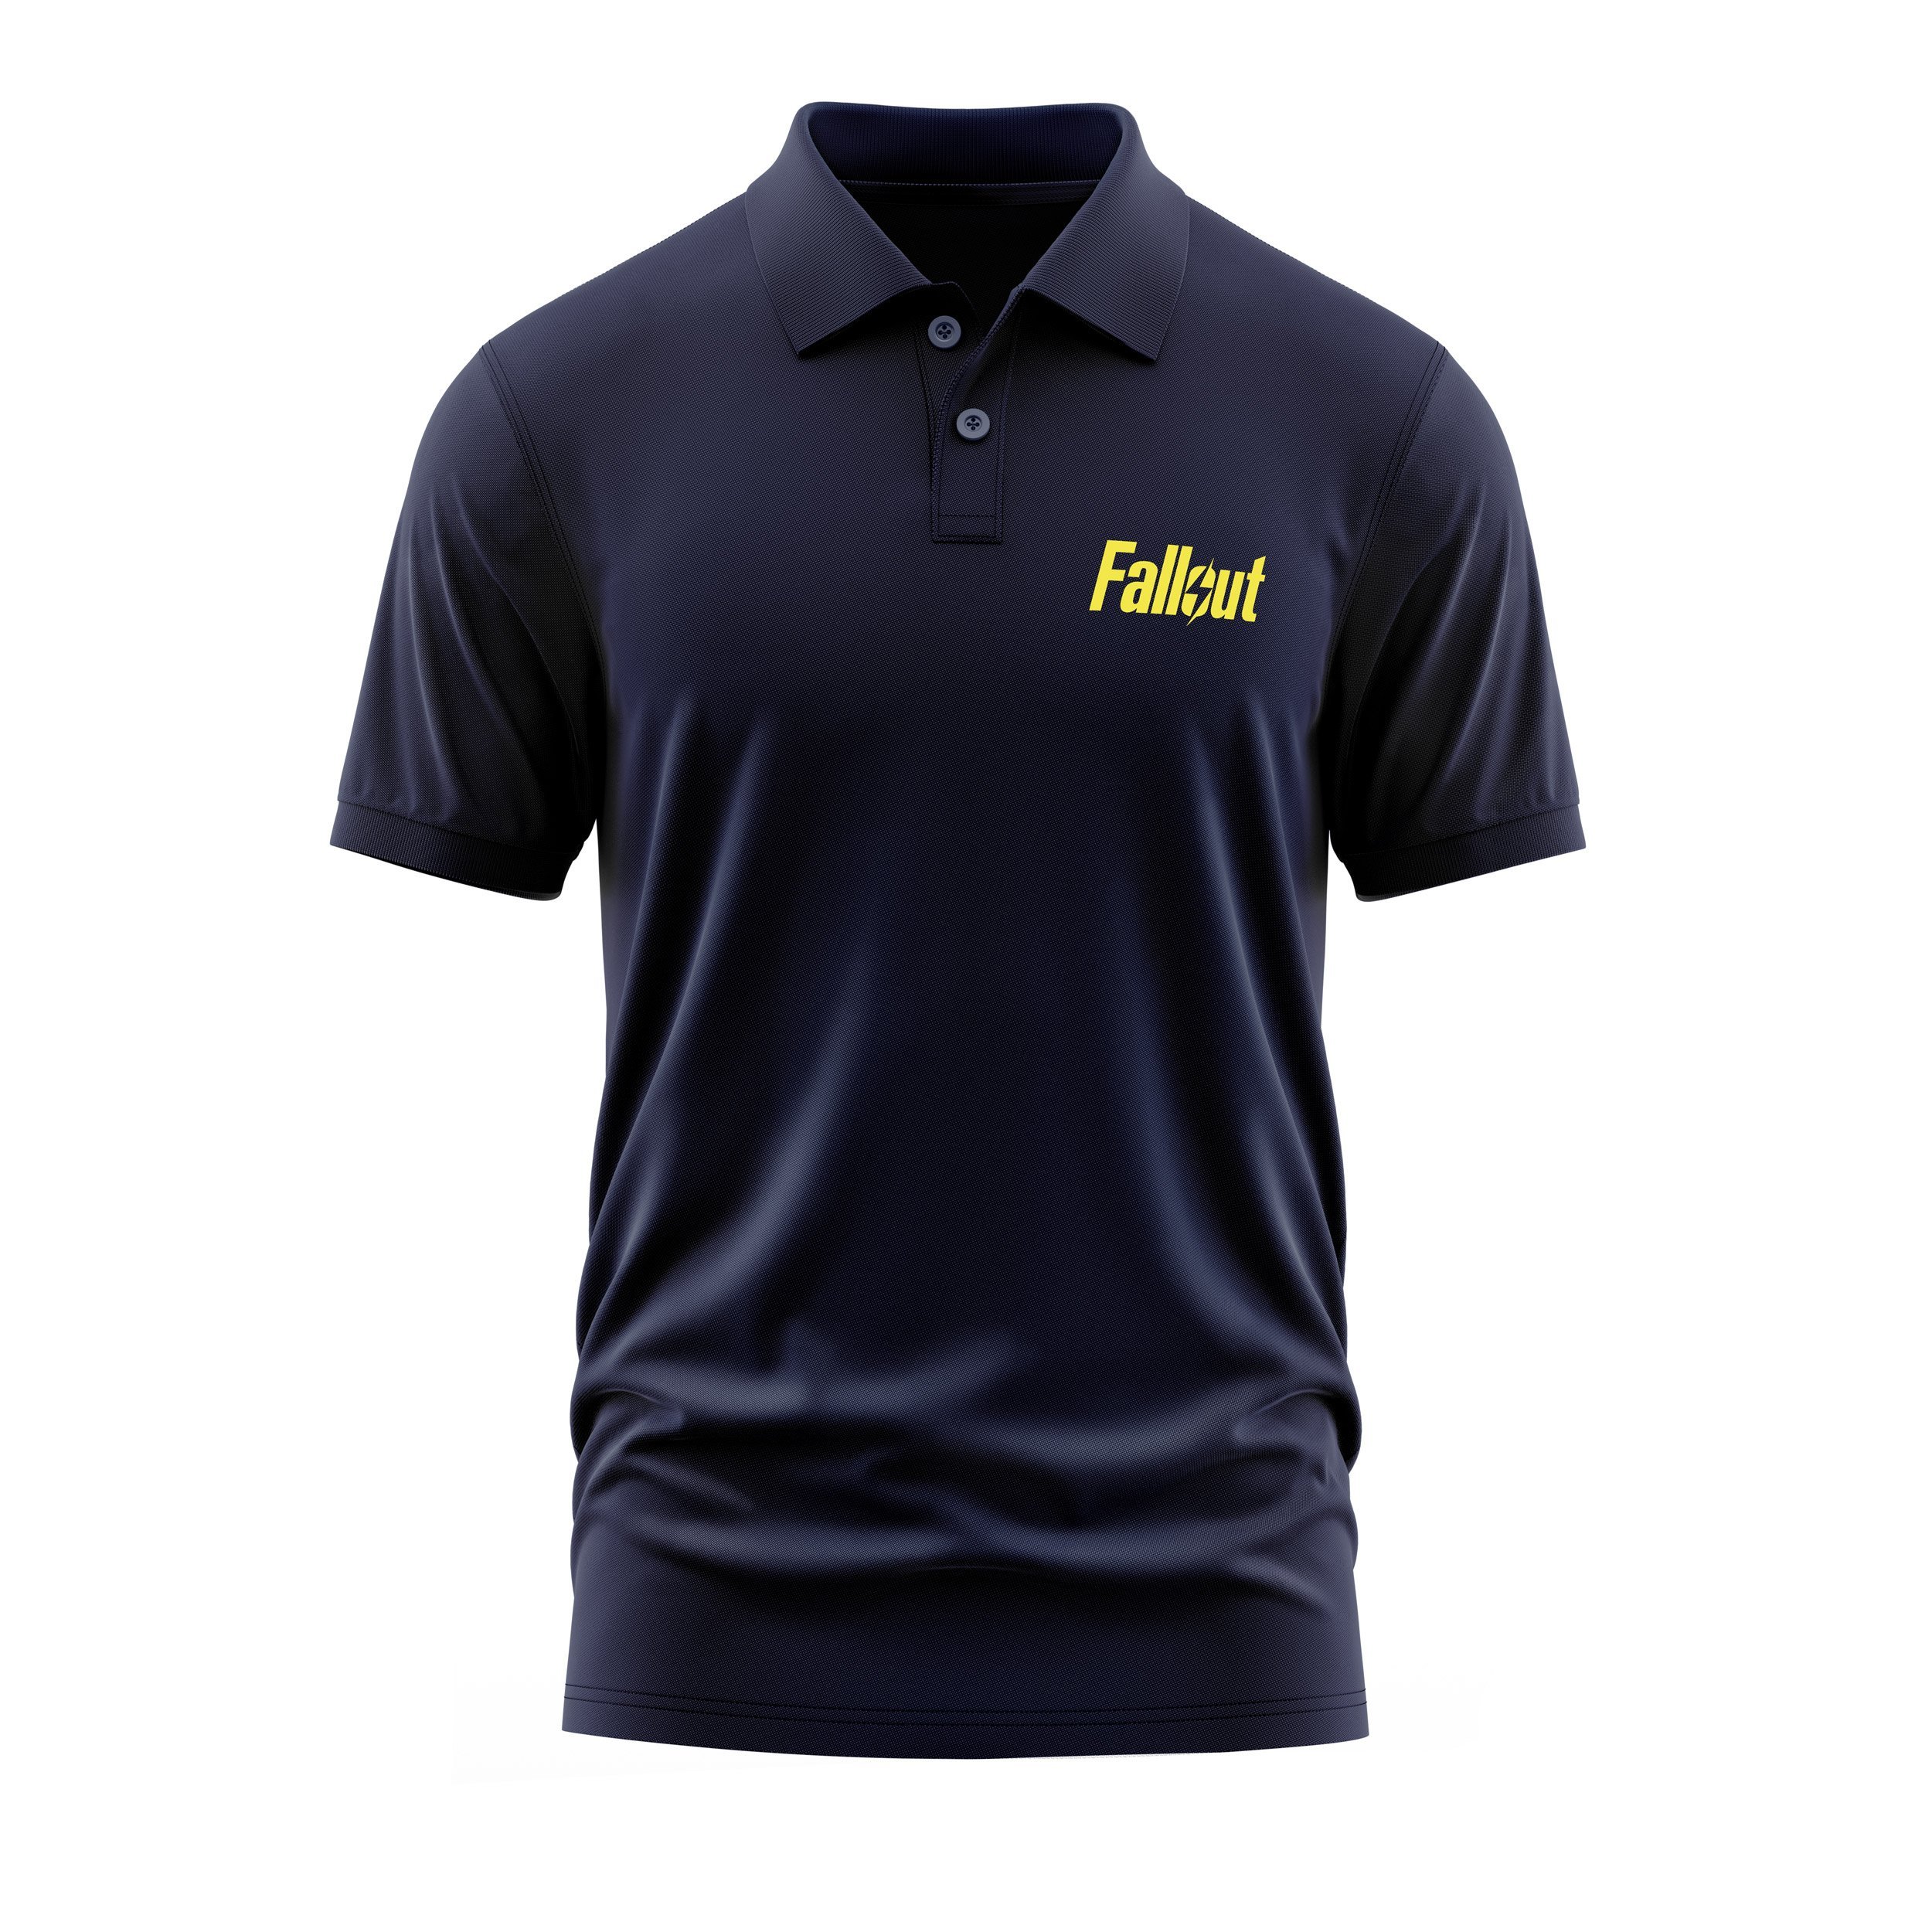 Fallout Koyu Lacivert Polo Tişört